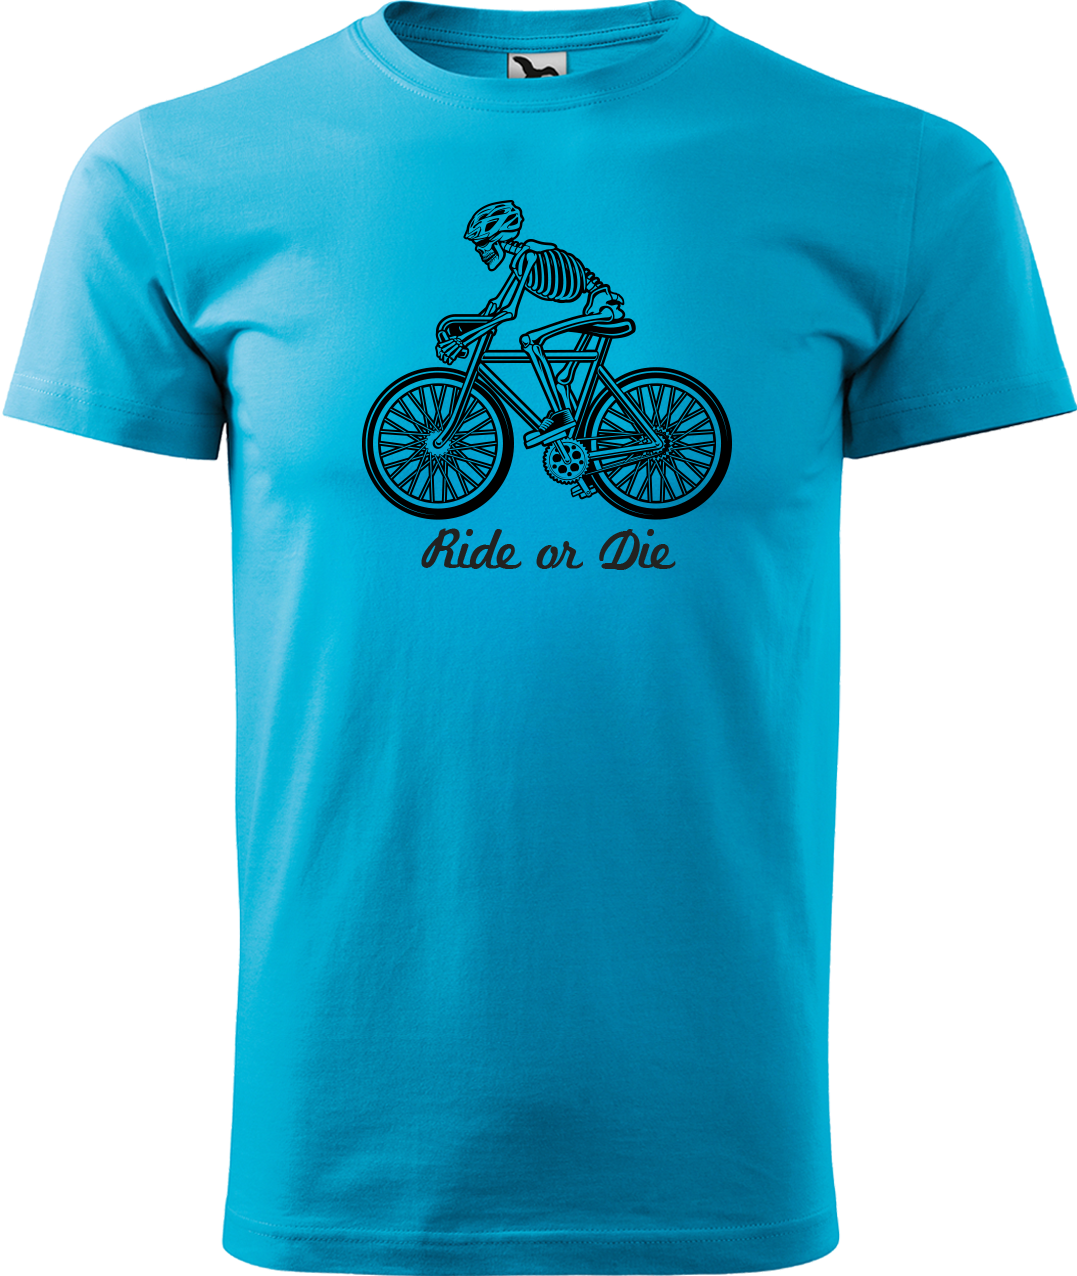 Pánské tričko pro cyklistu - Ride or Die Velikost: L, Barva: Tyrkysová (44)